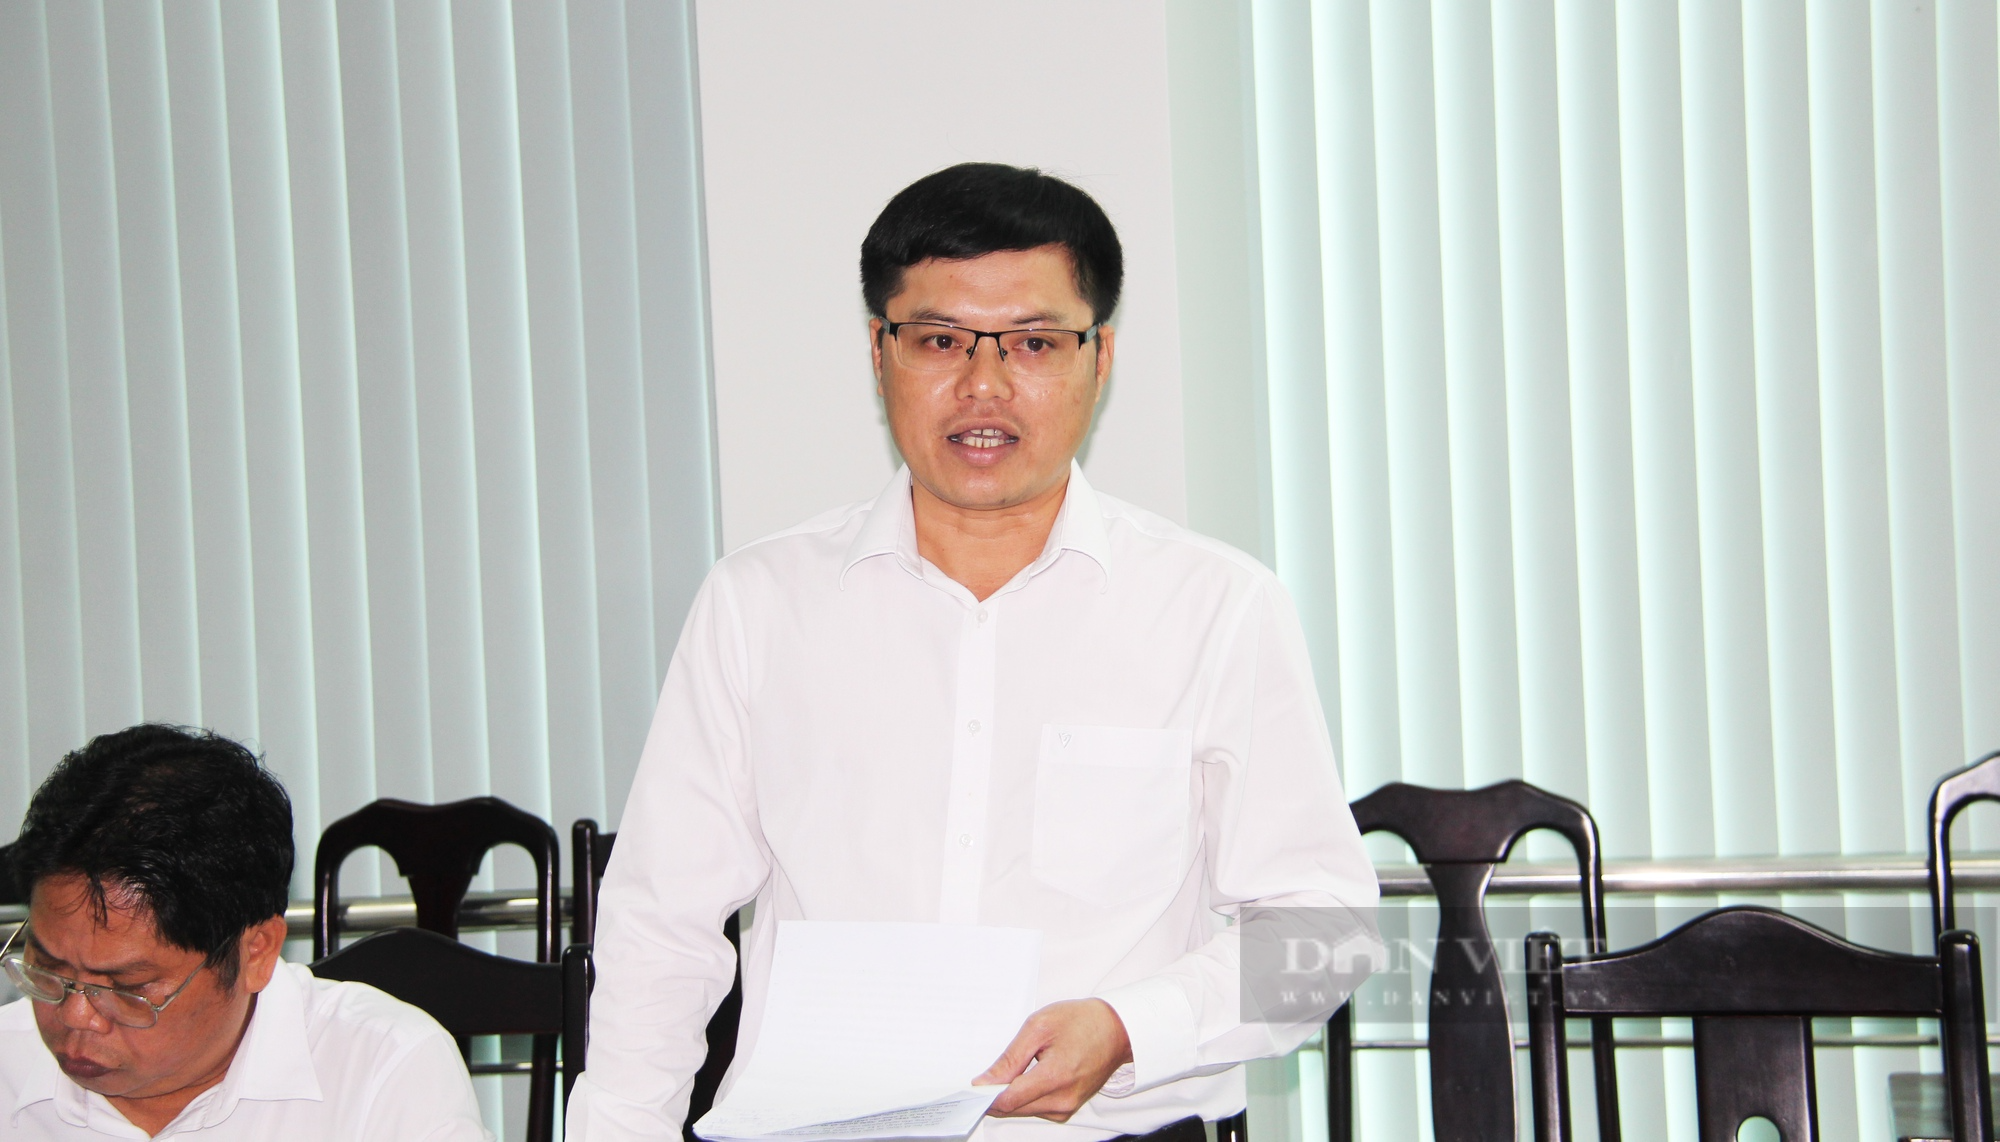 Phó Chủ tịch TƯ Hội NDVN Cao Xuân Thu Vân: Cần làm dự án lớn để giúp nông dân Bến Tre - Ảnh 1.